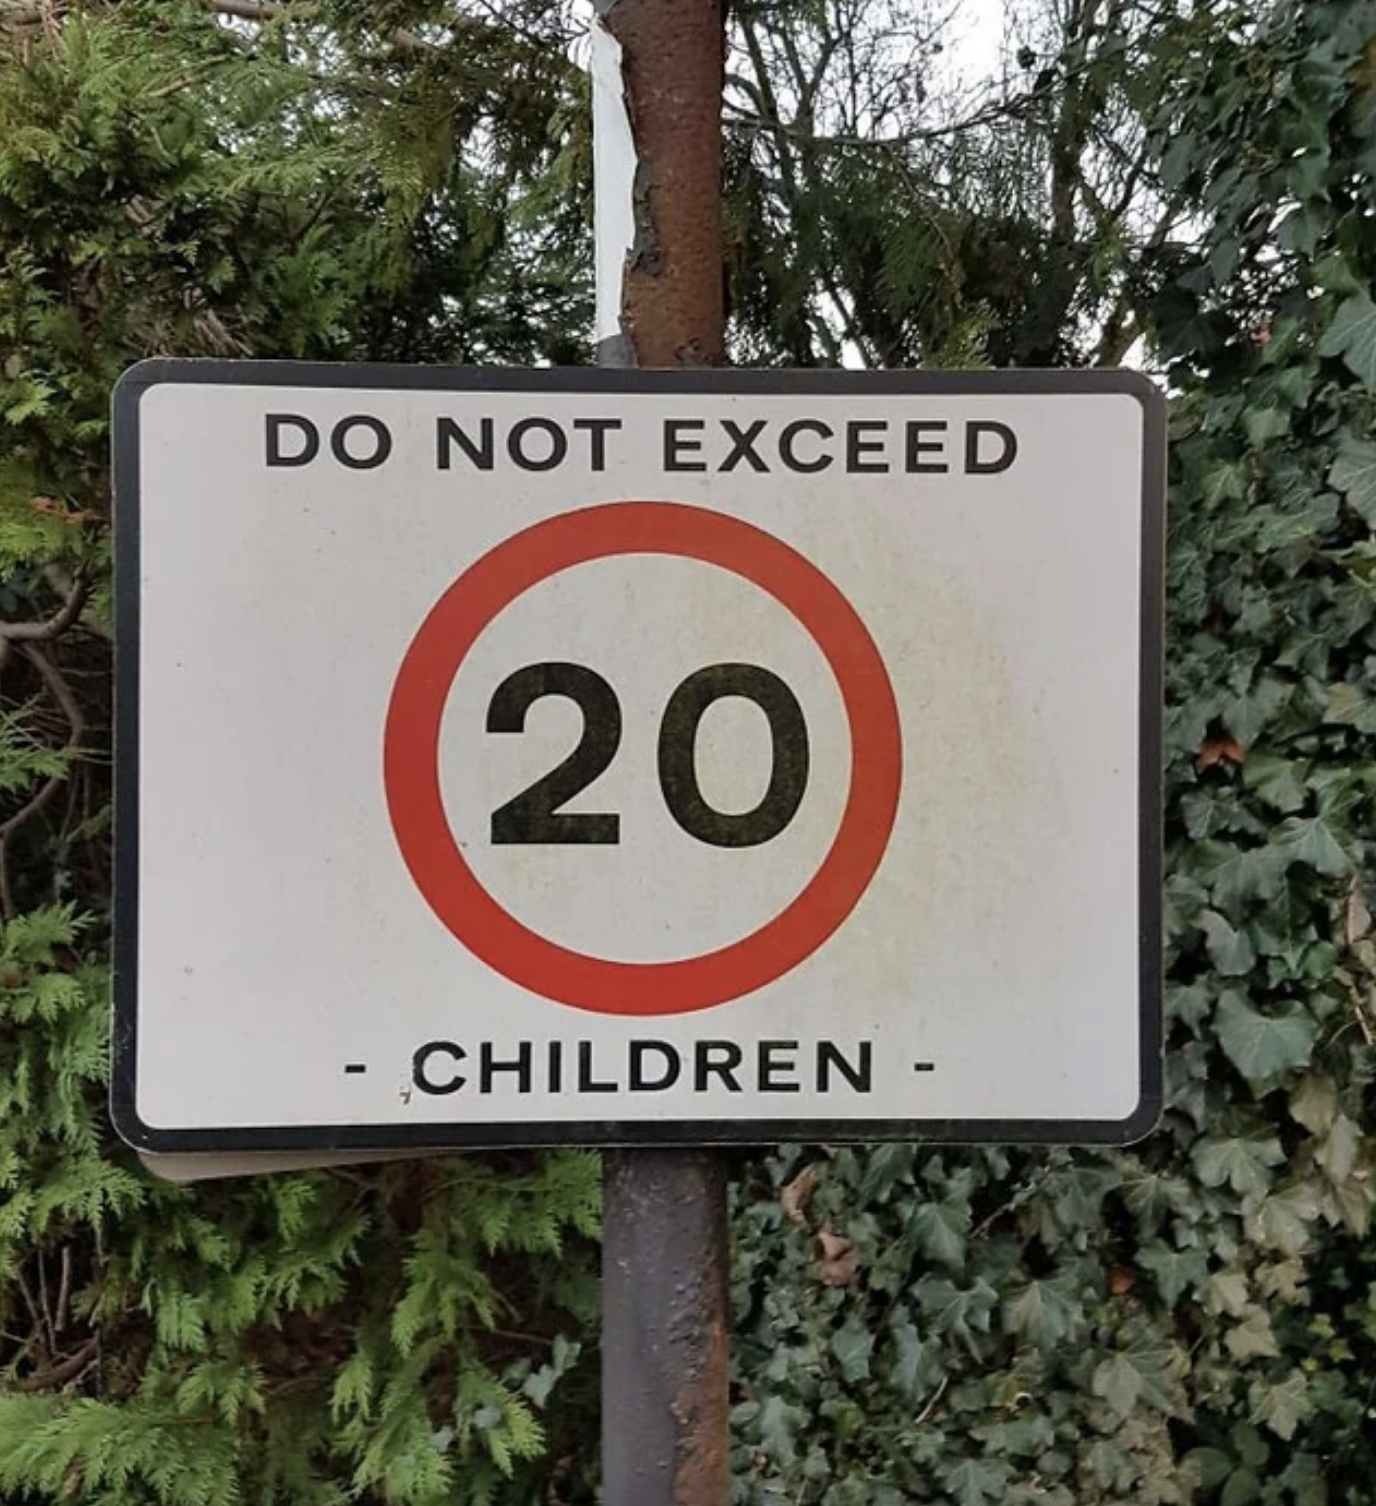 &quot;Do not exceed 20 children&quot;